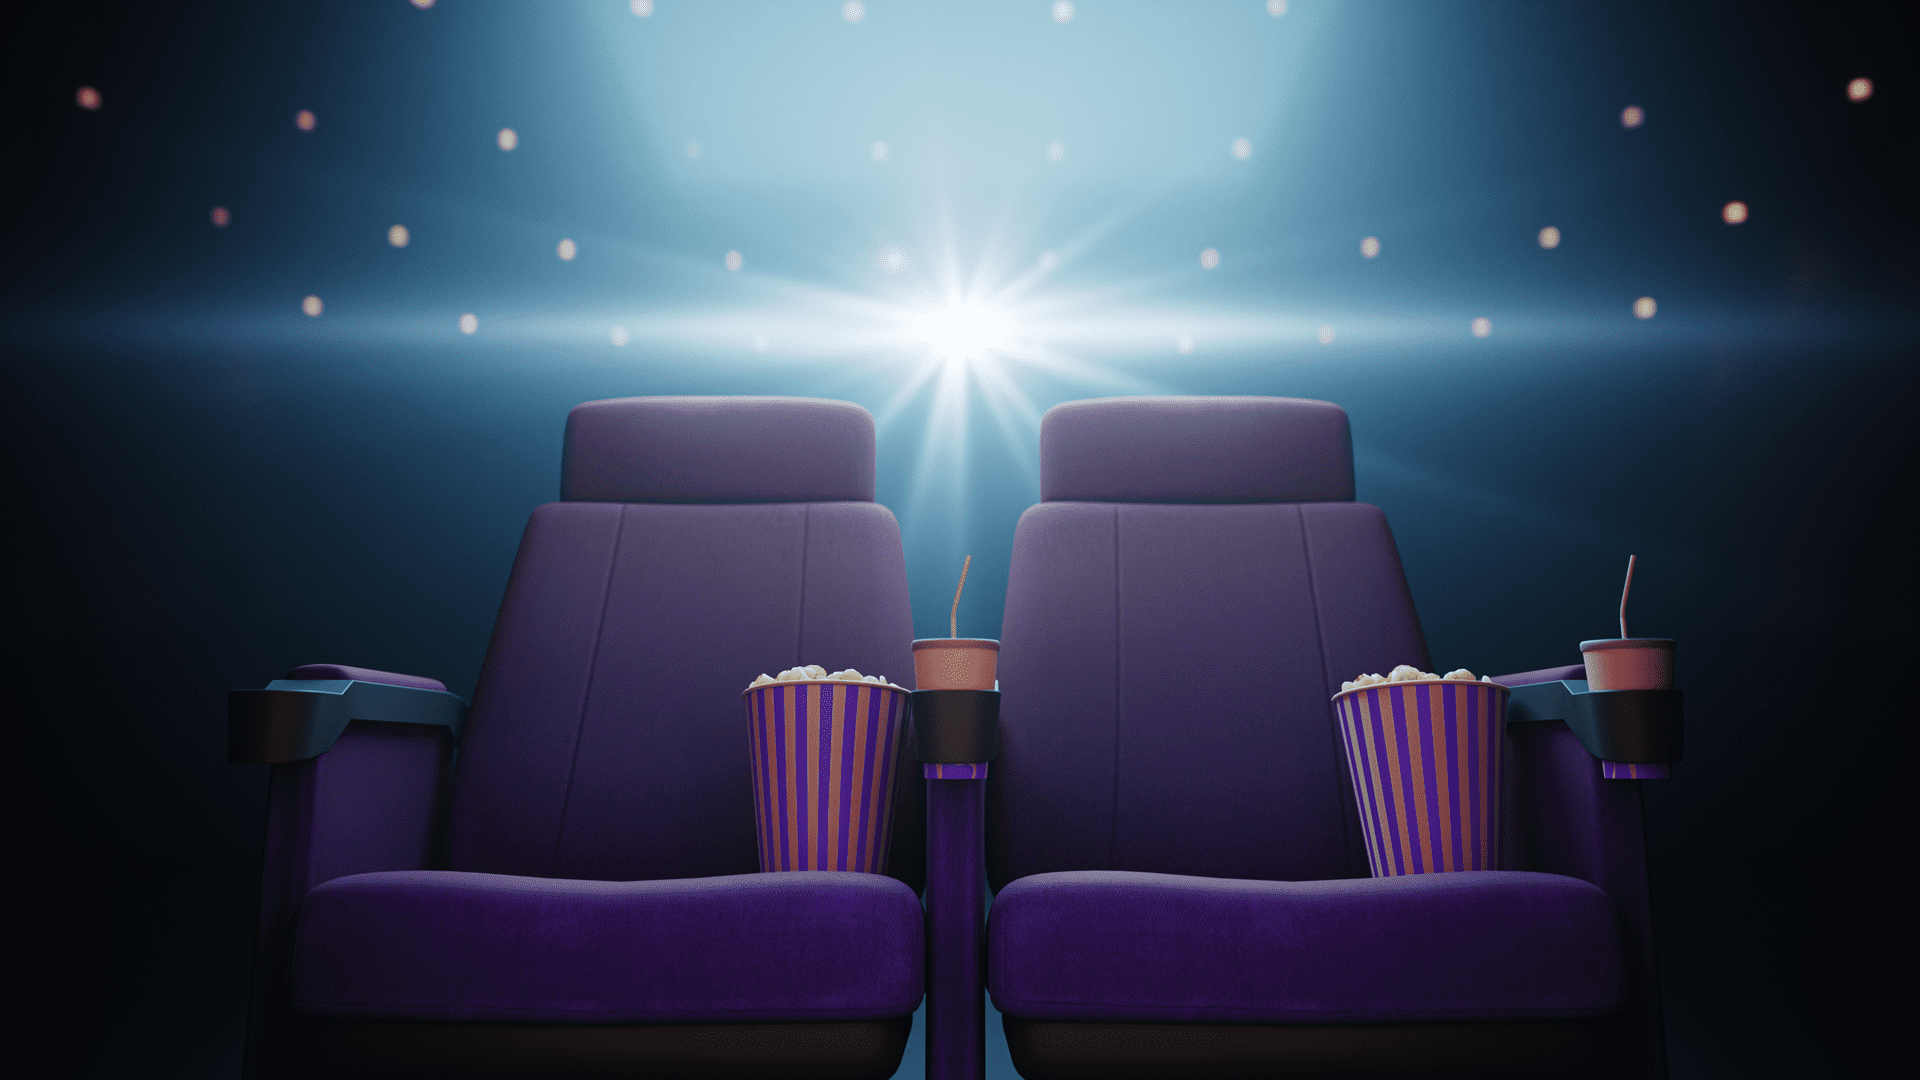 dos sillas de cine en una sala de proyección de películas